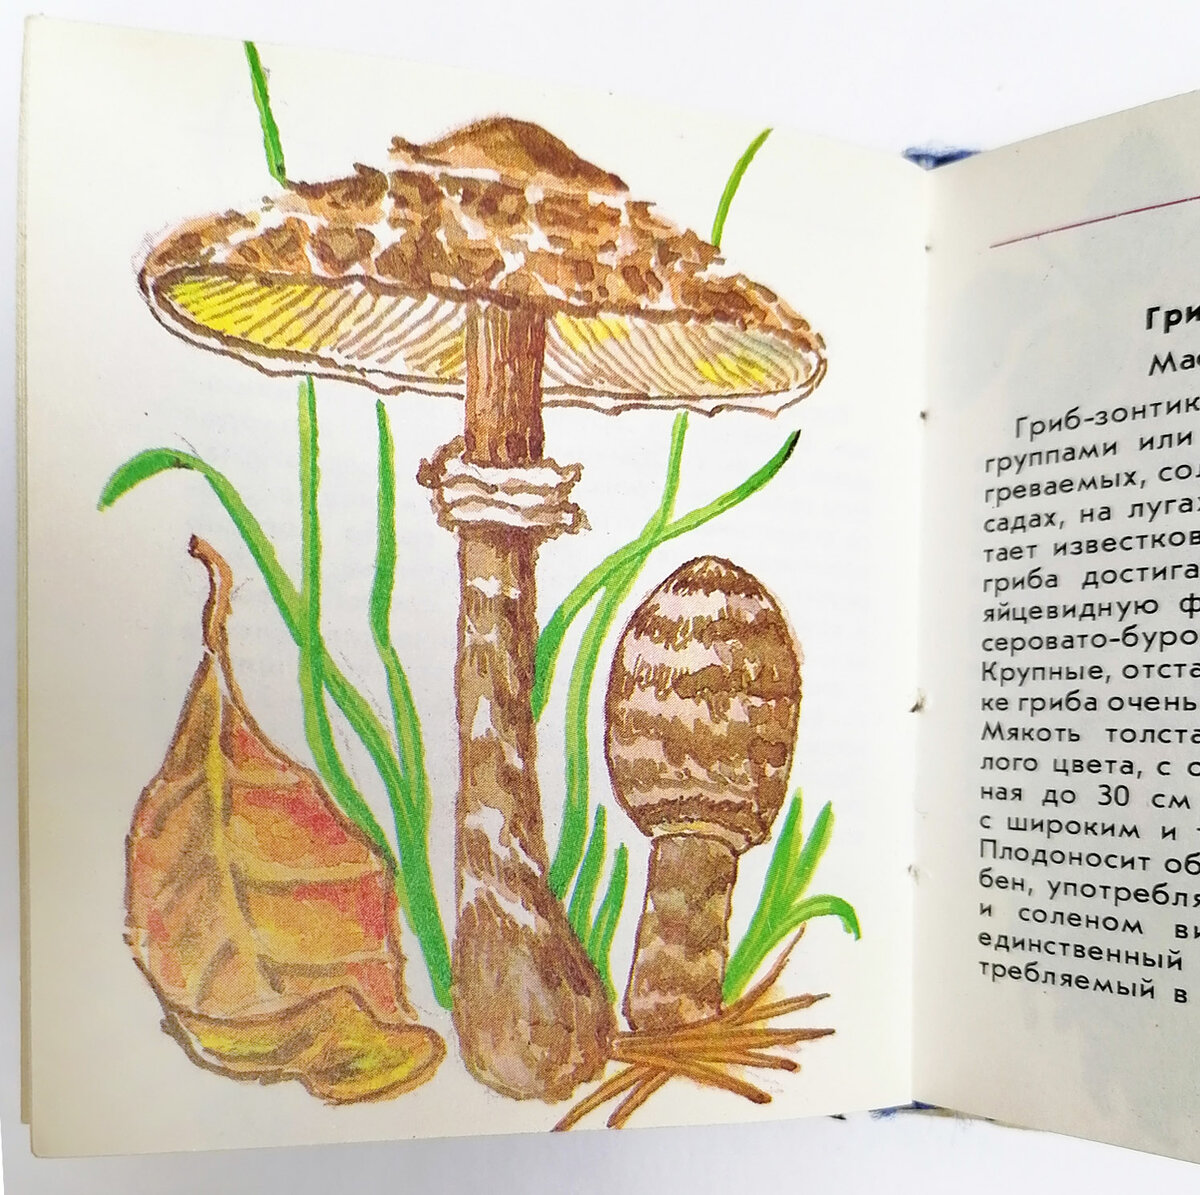  С появлением науки биологии появилась ботаническая иллюстрация. Начало иллюстрированию ботанических книг в России было положено в первой половине XVIII века.-2